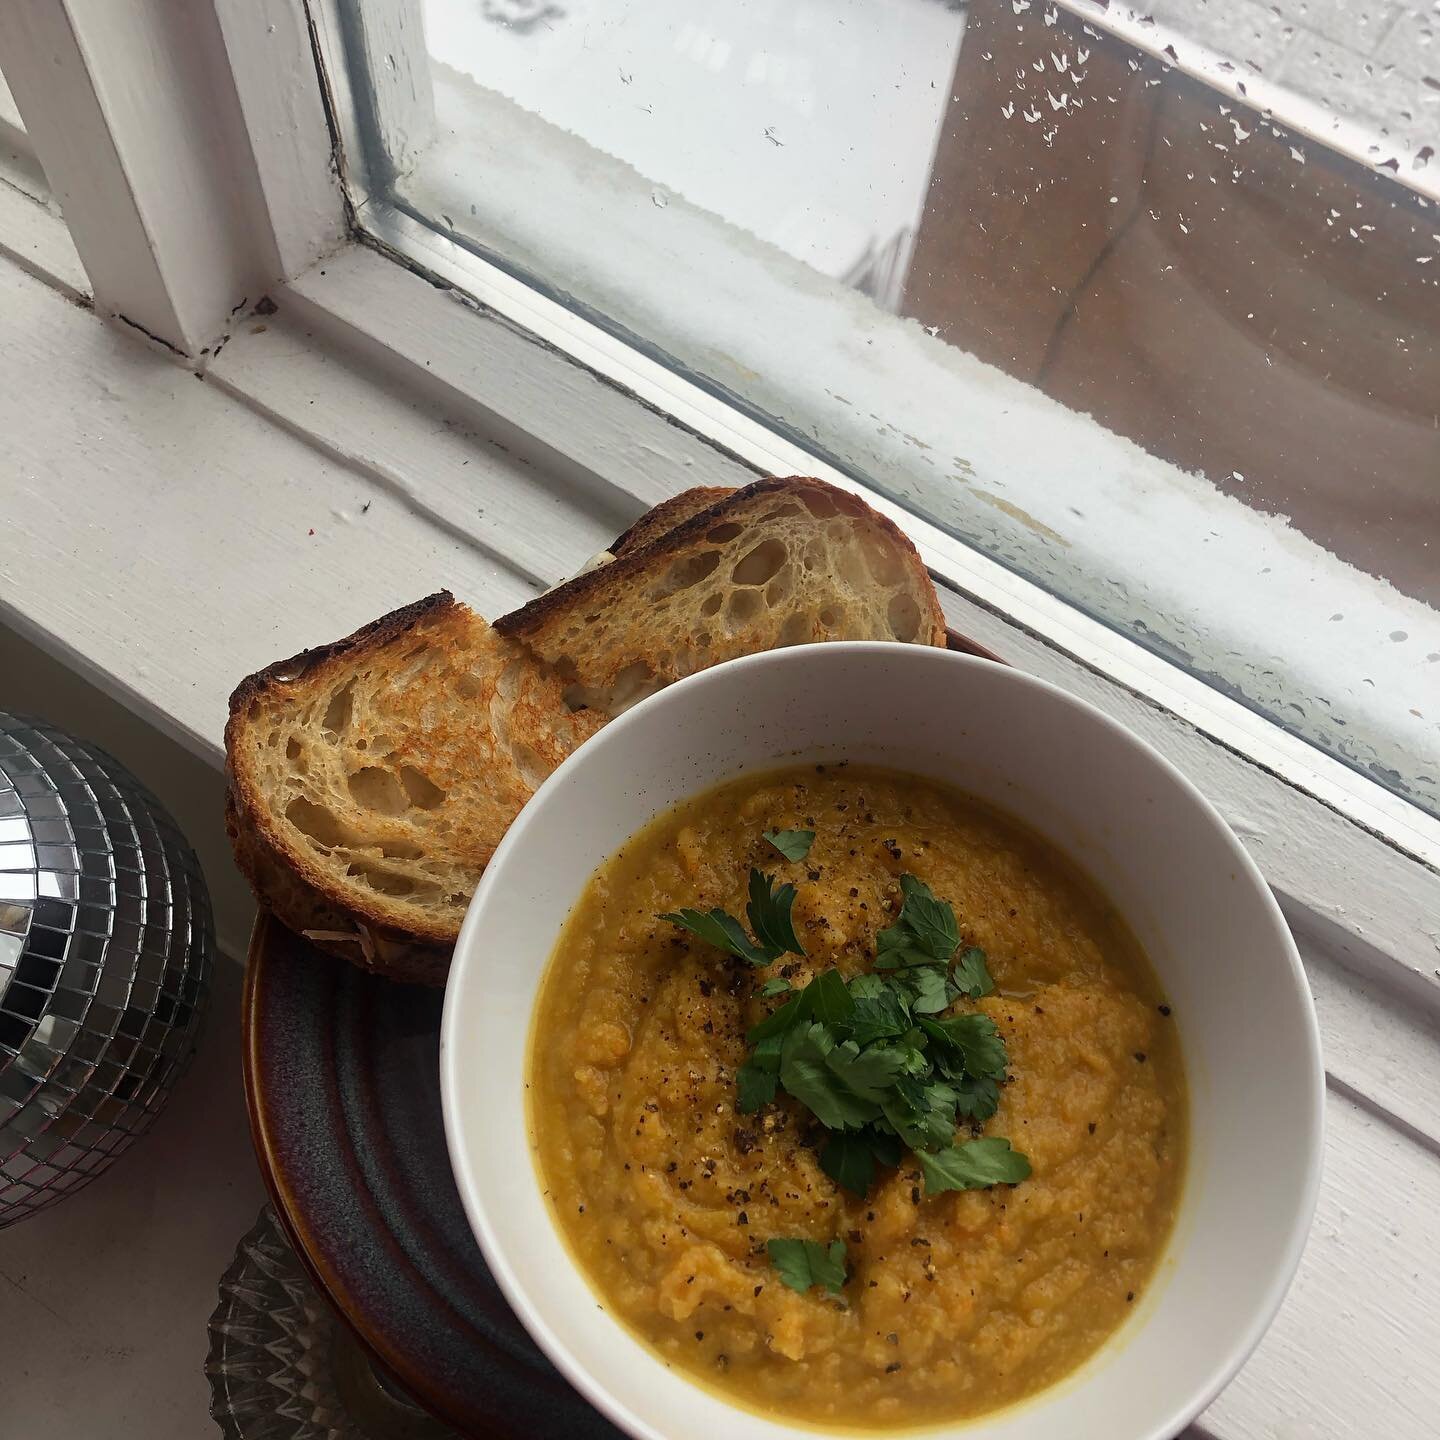 comfort food for a snowy snowy day babyyyyyy 👏🏻👏🏻
roasted garlic cauliflower soup w goat gouda grilled cheeeeeese on @bbirdco kensington sourdough